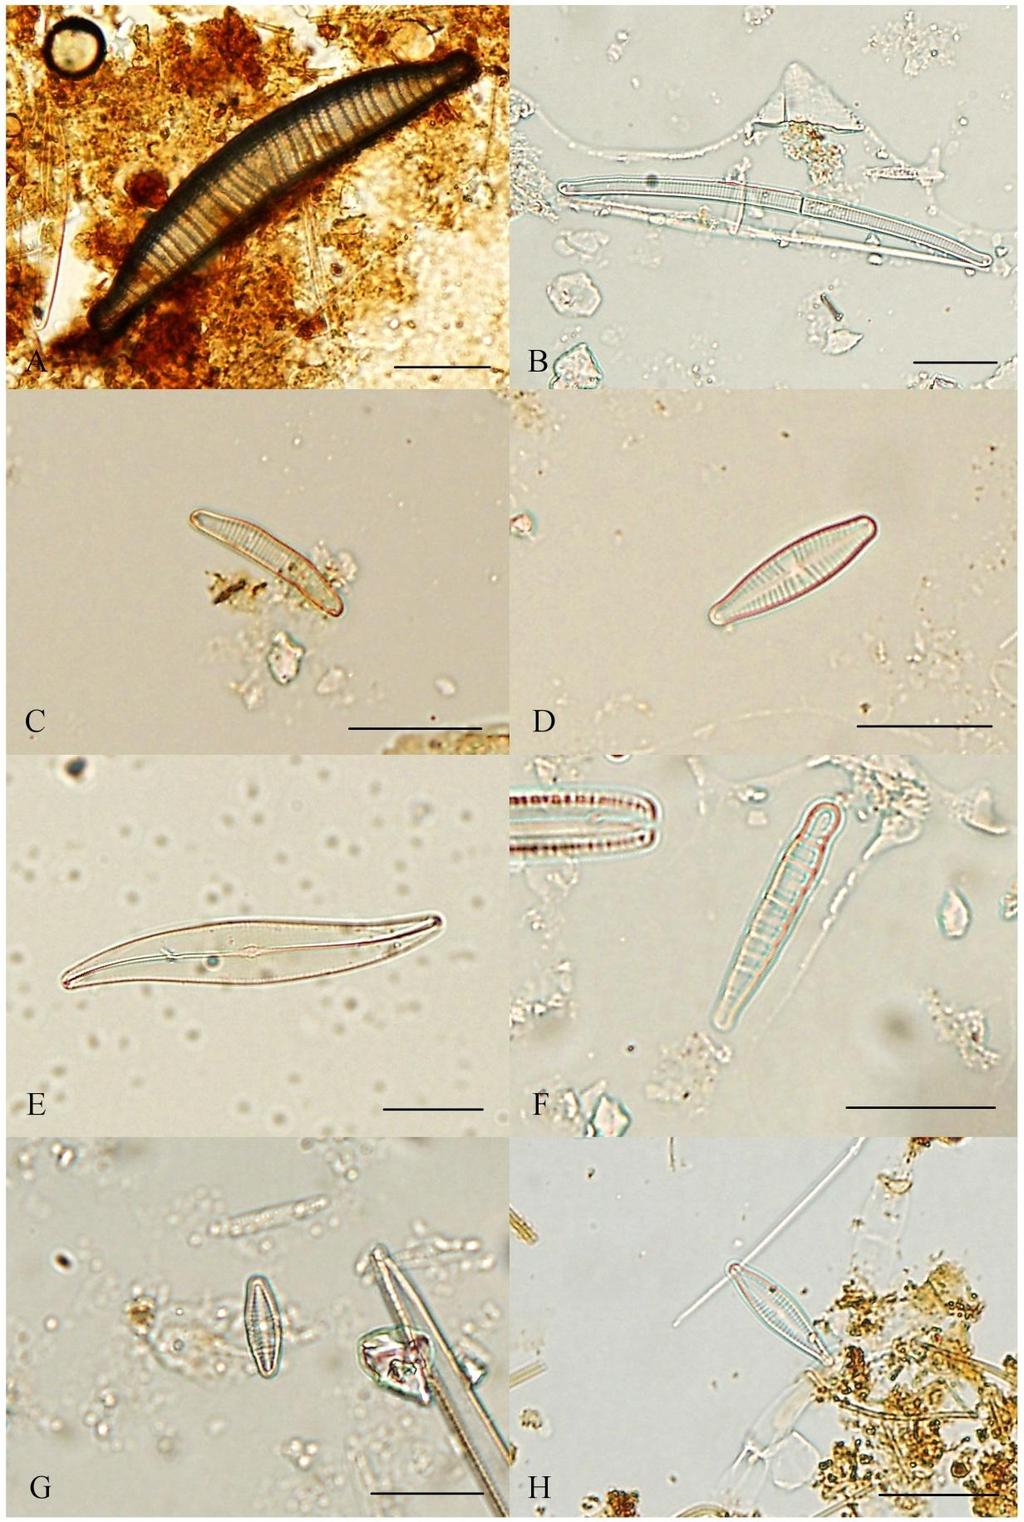 Příloha 13: Fotodokumentace vybraných zástupců Bacillariophyceae II (A Epithemia argus, B Eunotia parallela, C Eunotia pectinalis, D